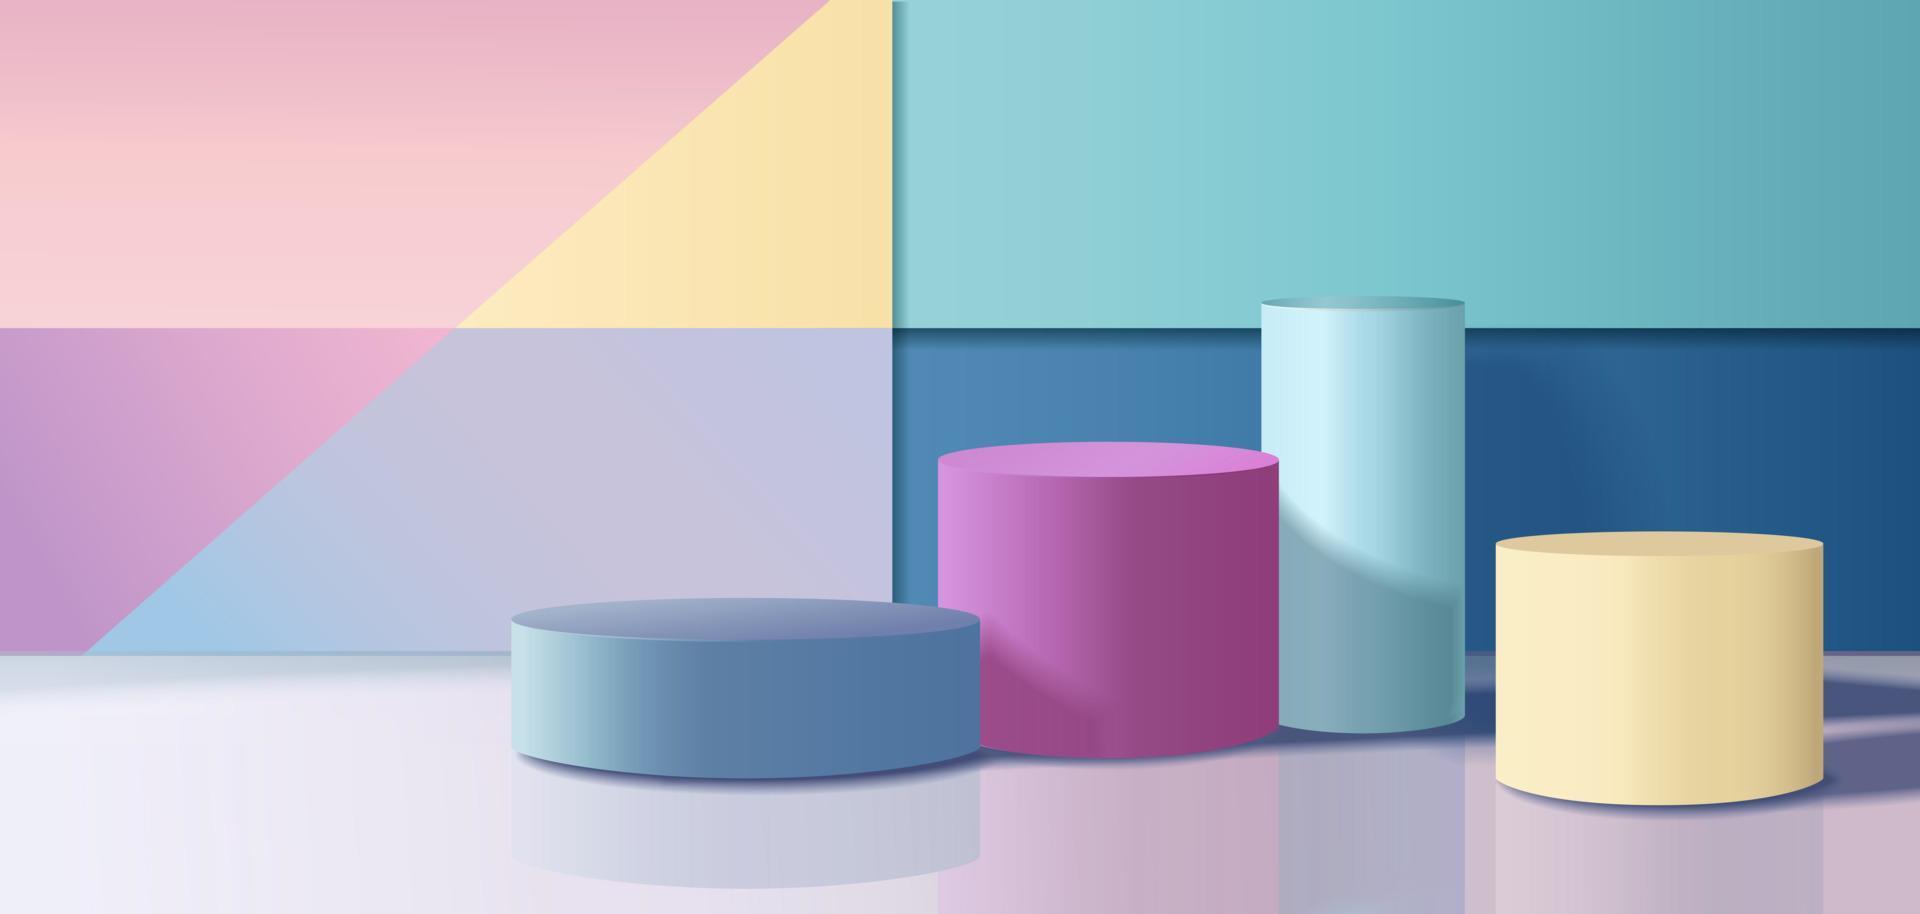 abstrakt 3d Zimmer mit Gelb, Blau, Rosa, und Weiß realistisch Zylinder Podium. Pastell- Farbe auf das Mauer. Vektor Rendern geometrisch form. Attrappe, Lehrmodell, Simulation Produkt Anzeige. minimal Szene. Bühne Vitrine.